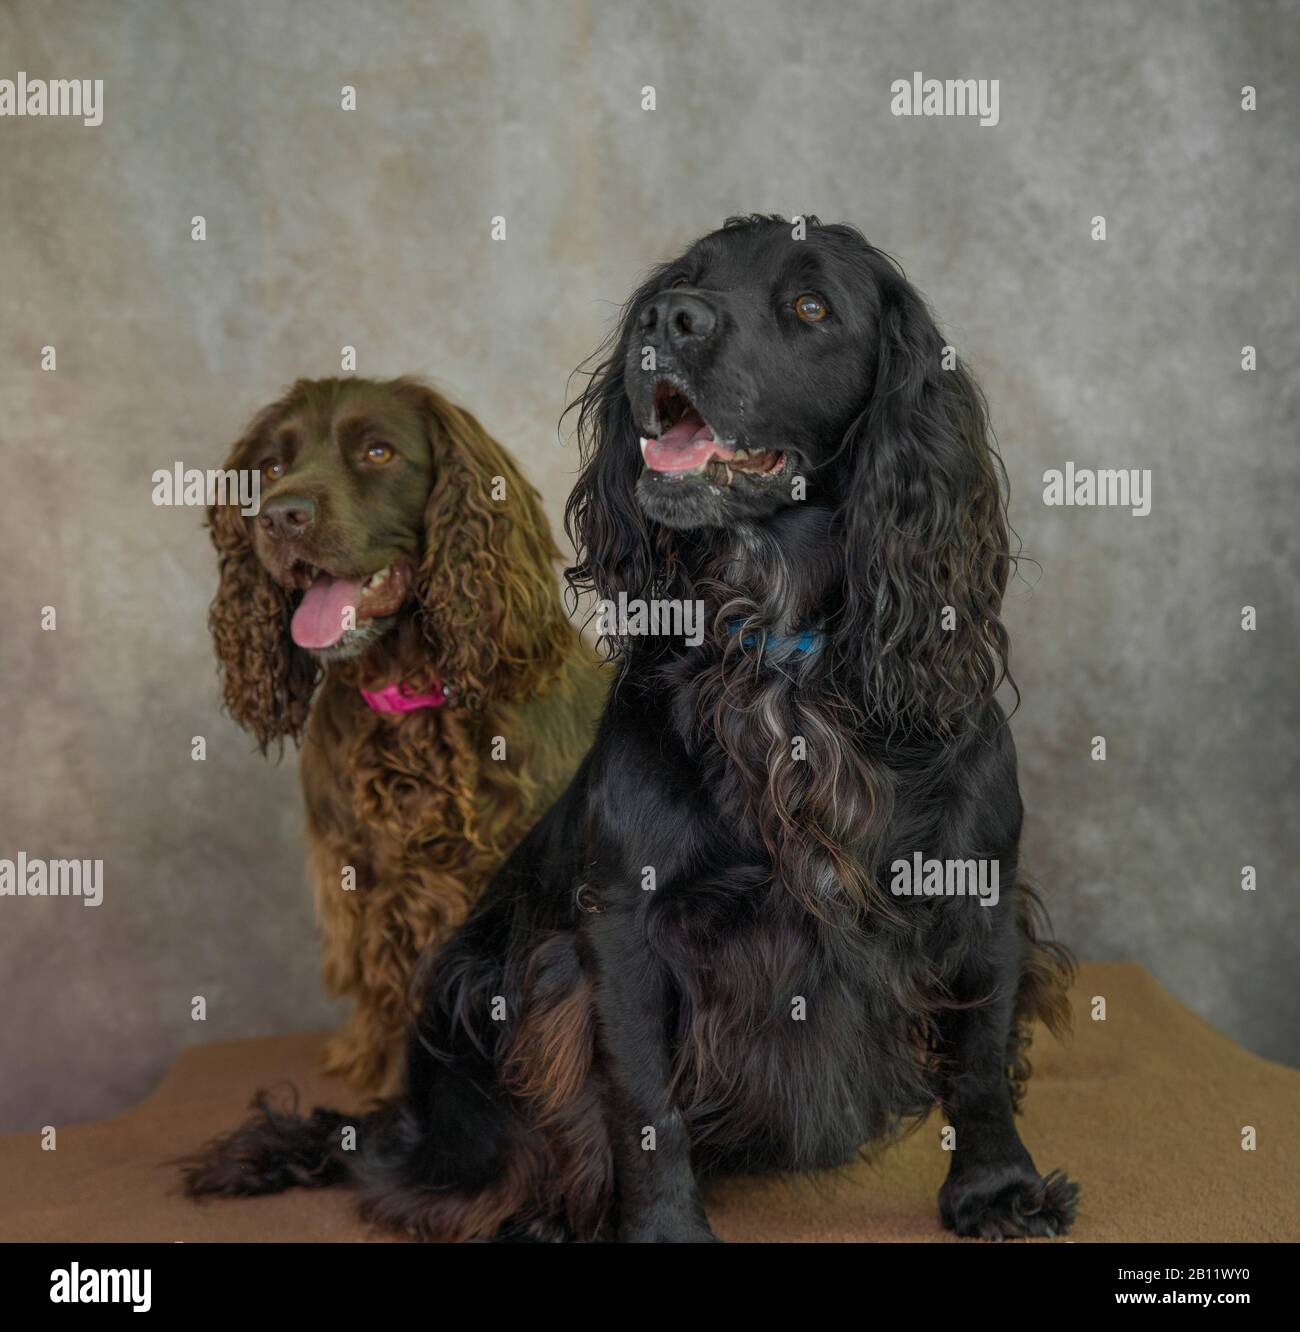 Lindo perro retrato fotografía de dos paniels de trabajo de cocker Foto de stock